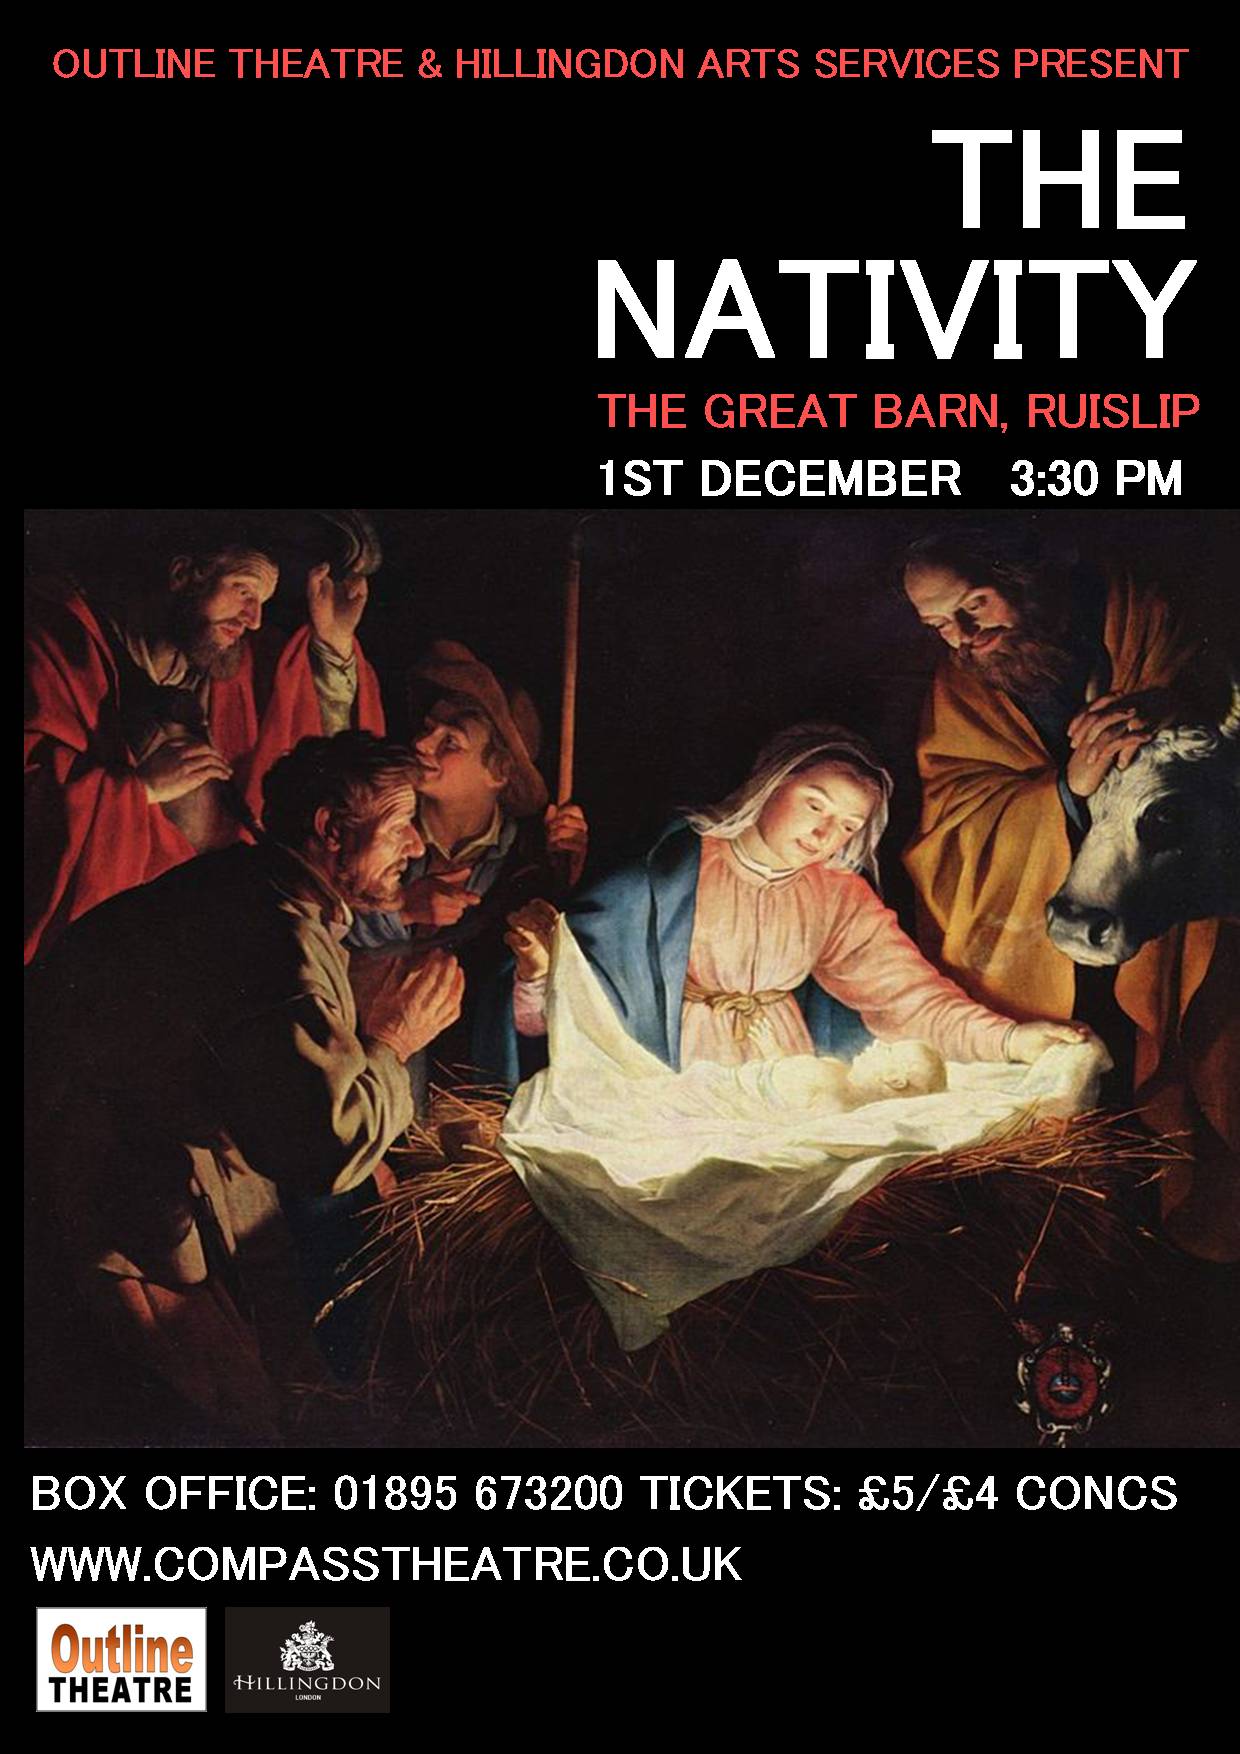 NativityPoster.jpg